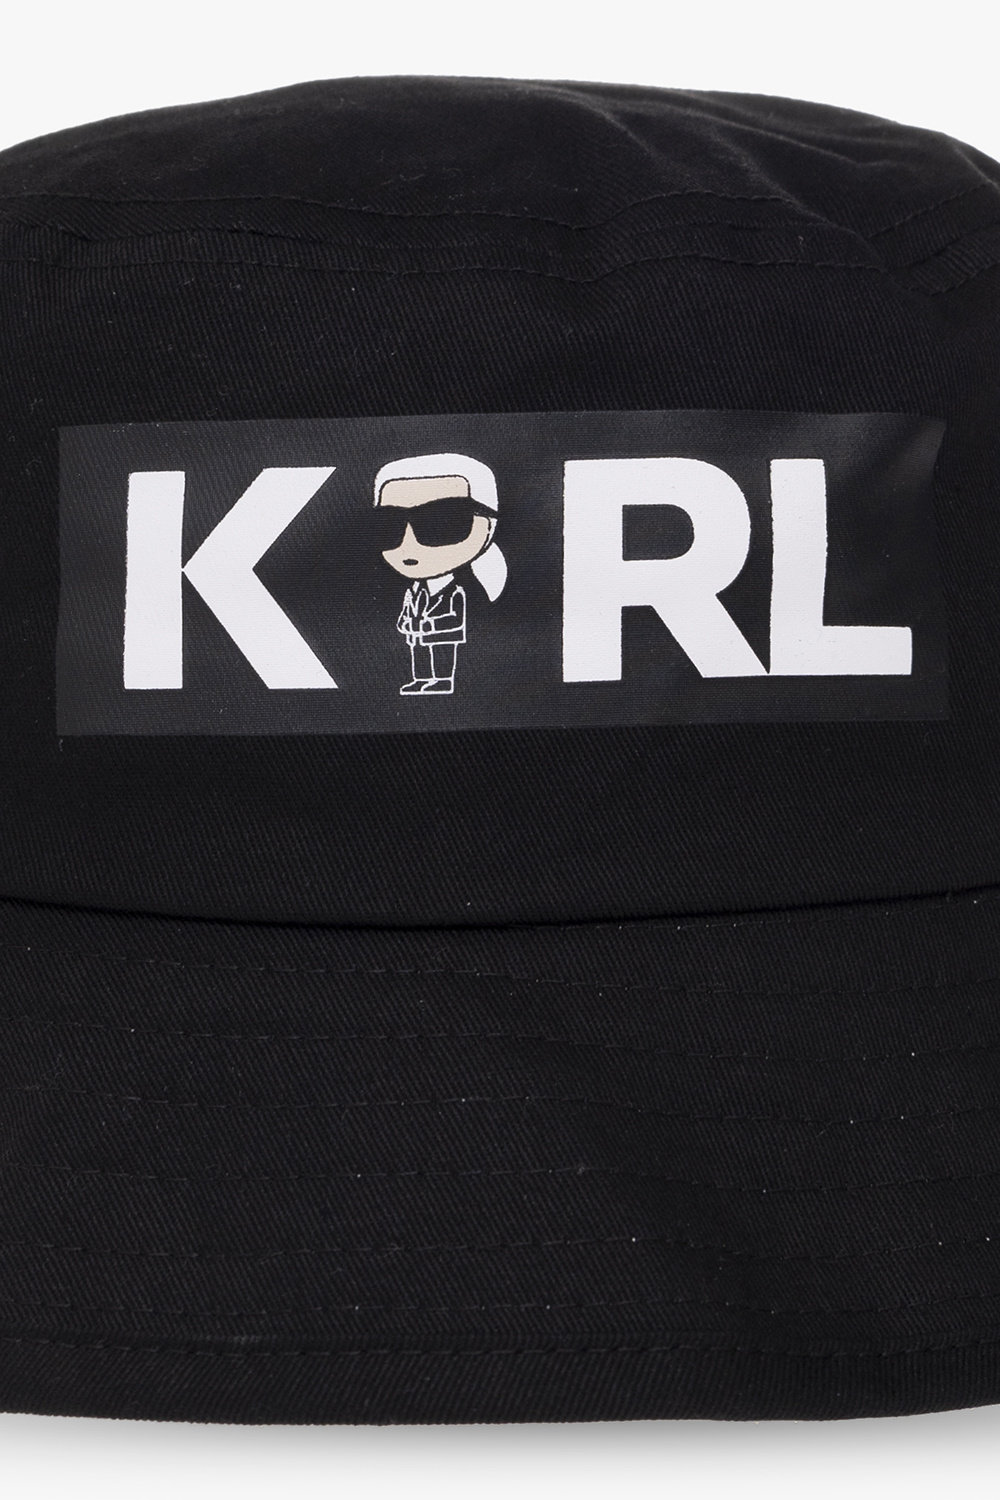 Karl Lagerfeld Kids Ruslan Baginskiy crystal-embellished canotier hat